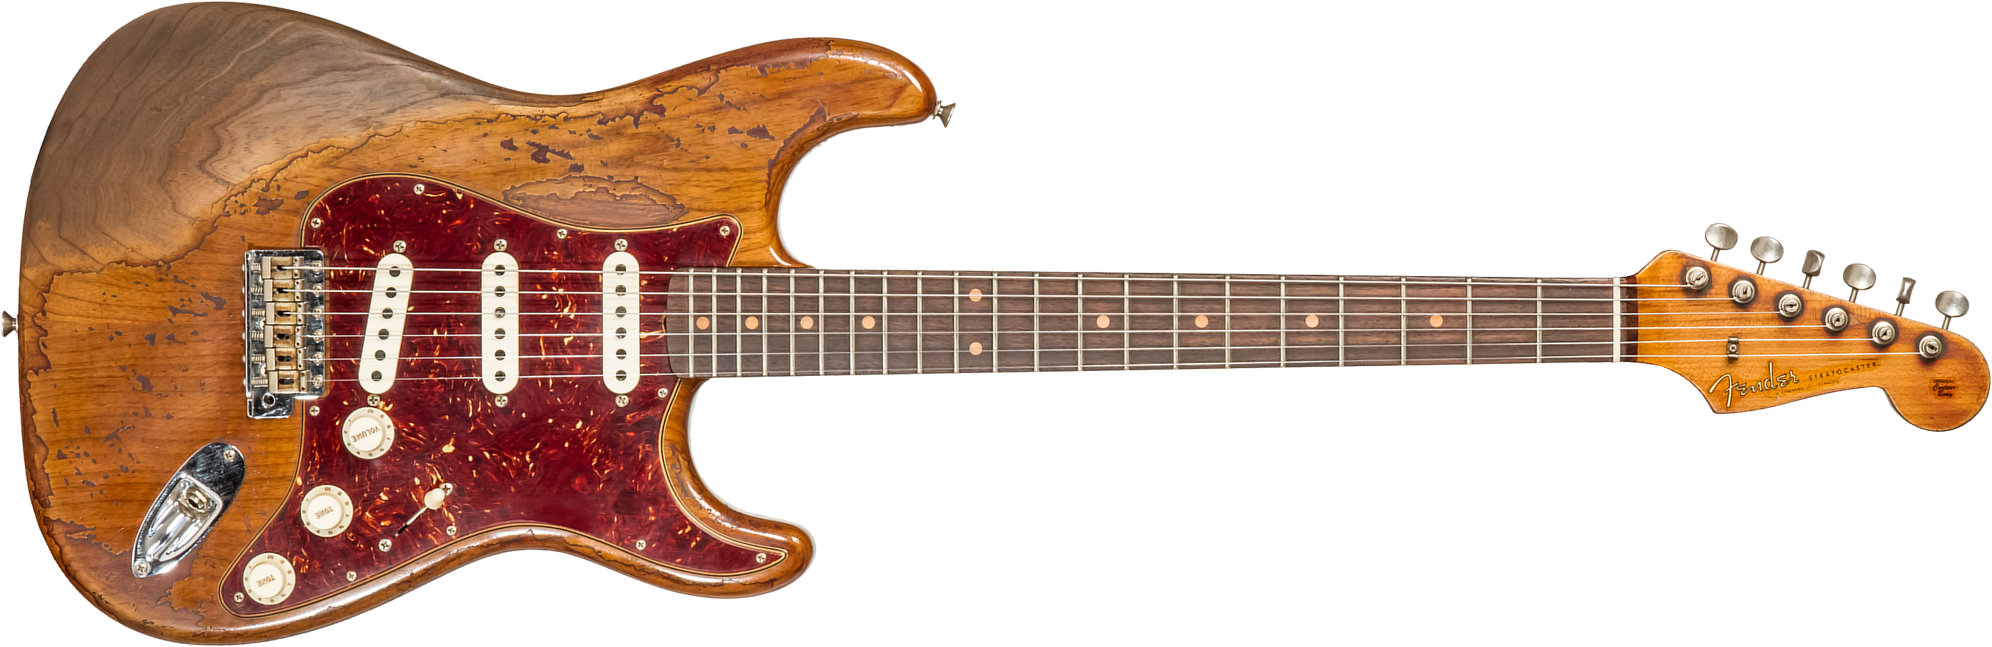 Fender Custom Shop Strat 1961 3s Trem Rw #cz570051 - Super Heavy Relic Natural - Guitare Électrique Forme Str - Main picture